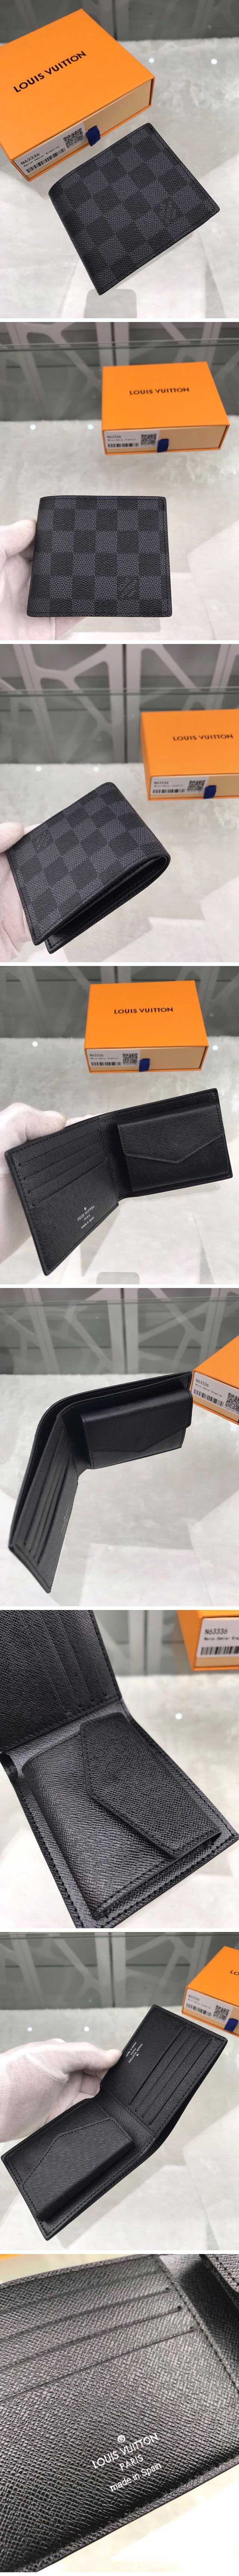 Louis Vuitton ルイヴィトン Portefeuil Multiple ポルトフォイユ ミュルティプル M63336 ダミエ・グラフィック black ブラック